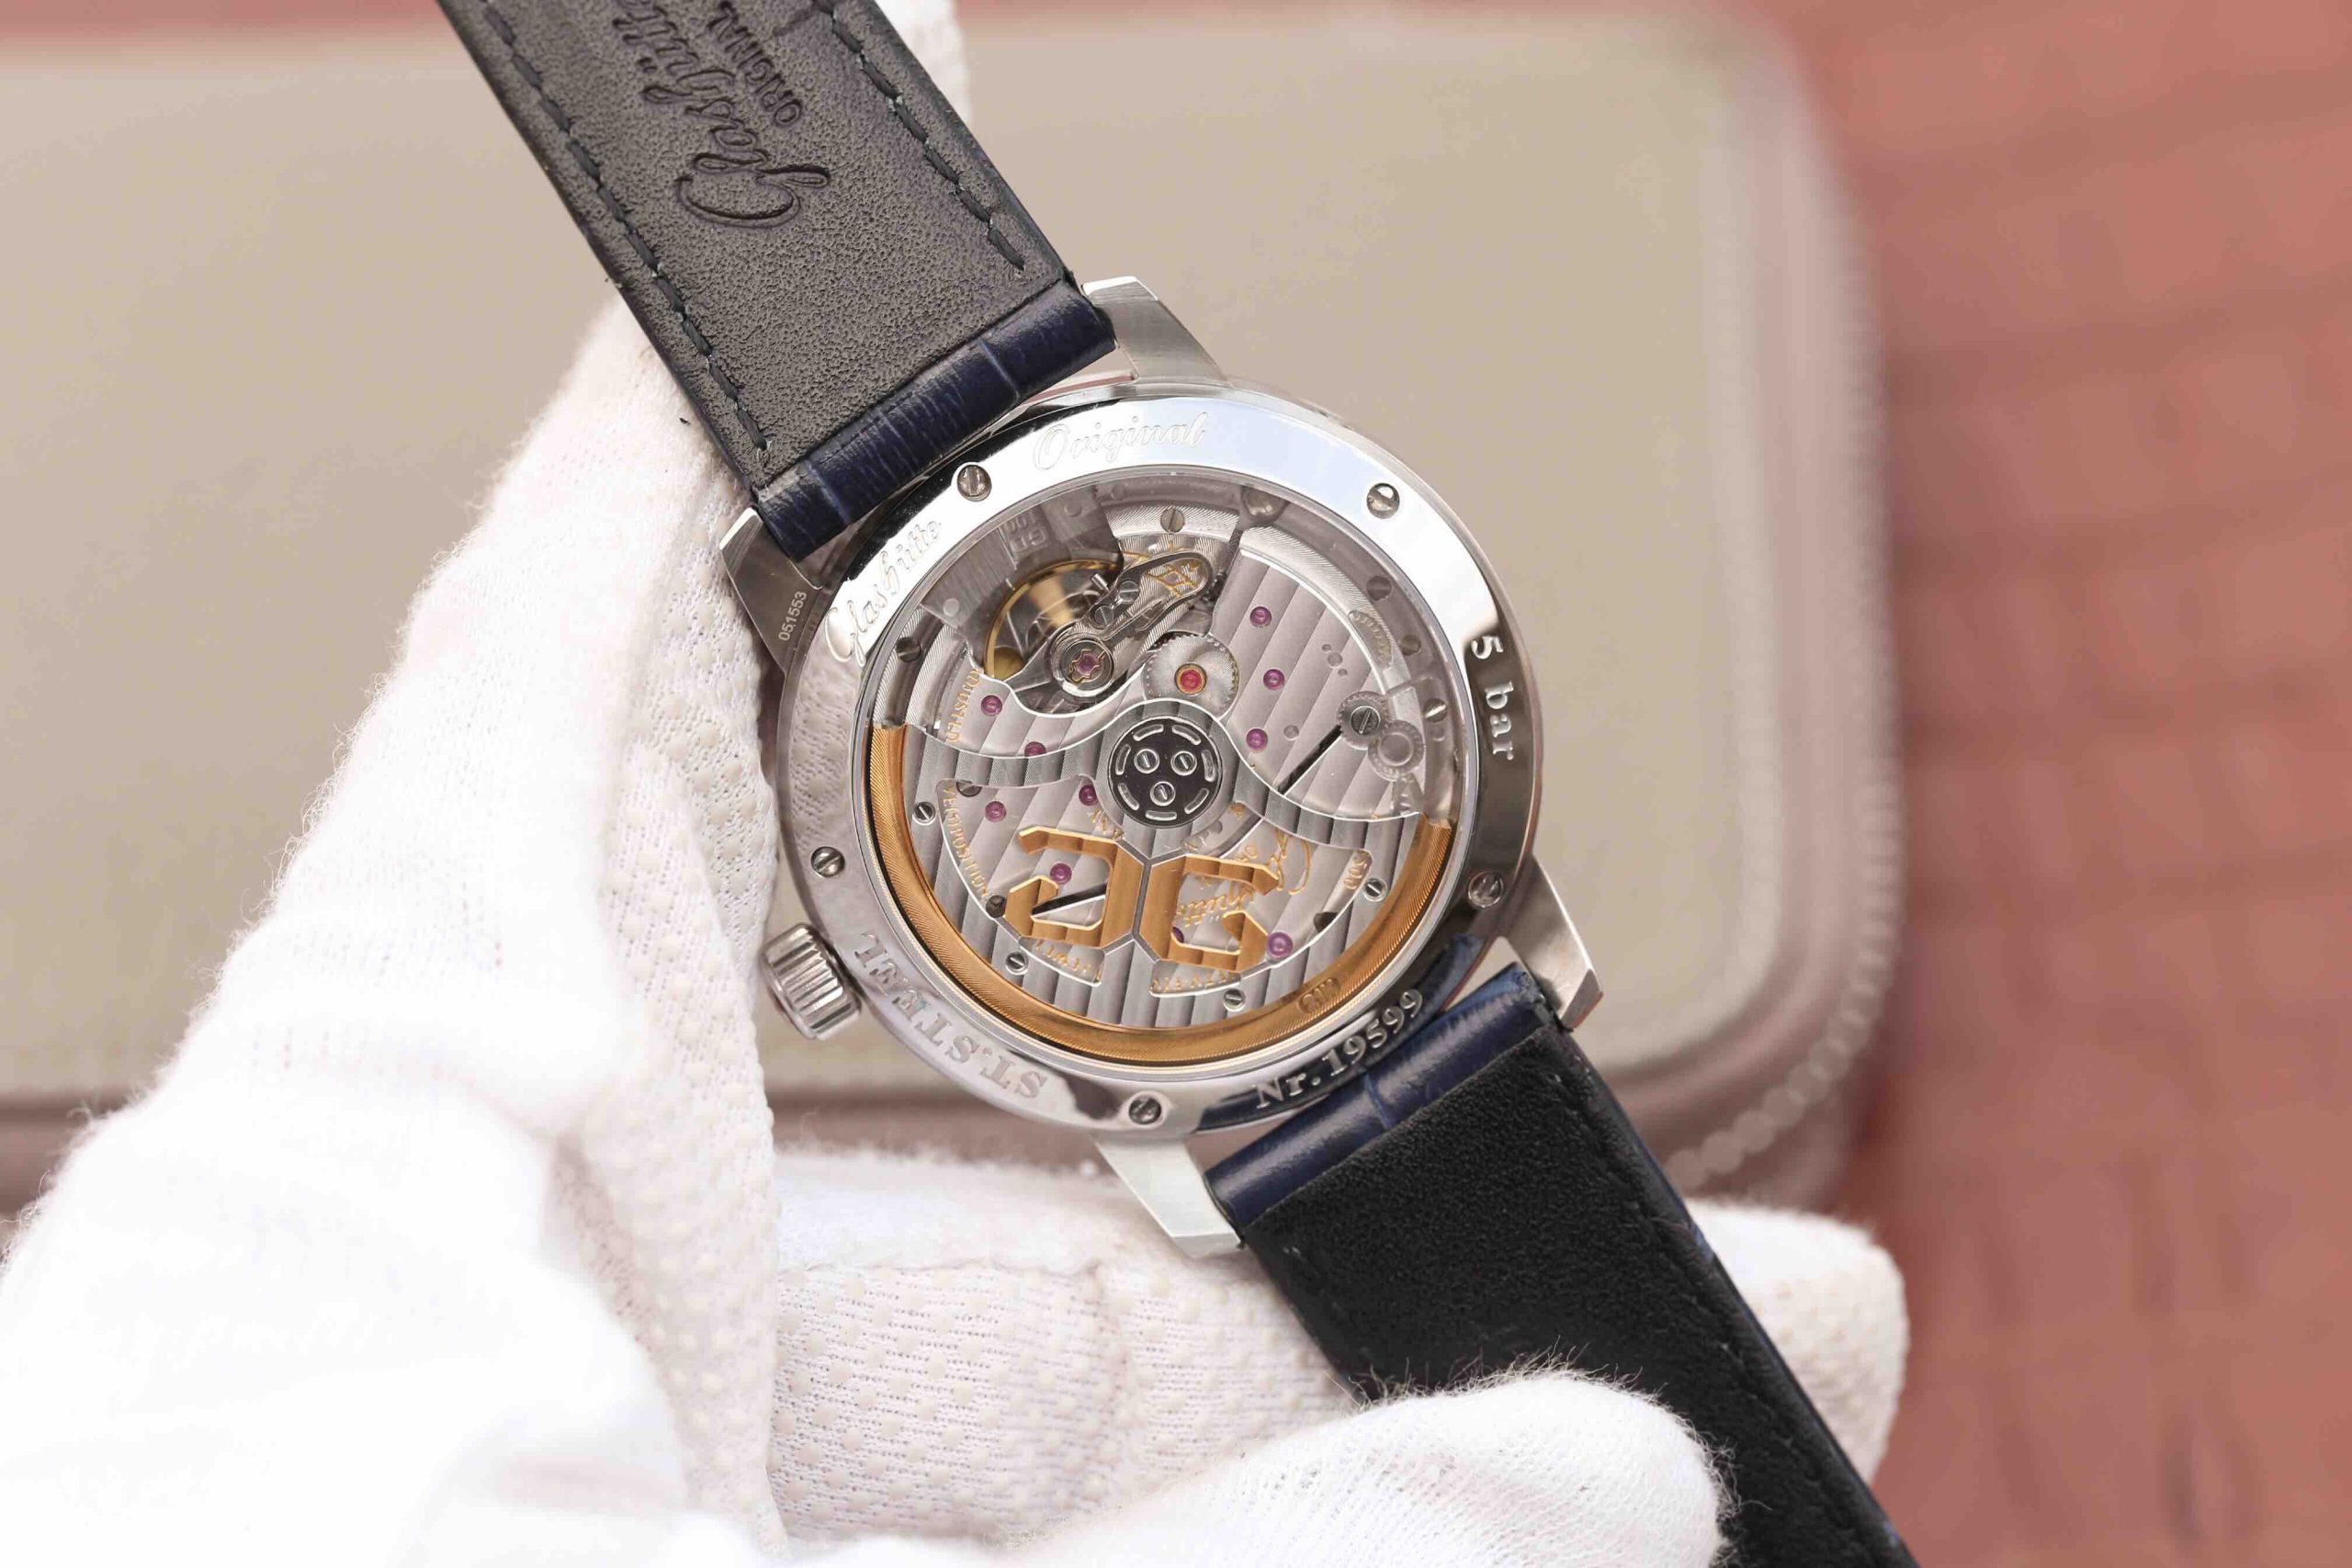 2023033103505576 scaled - 復刻手錶格拉蘇蒂手錶價格及圖片 GF格拉蘇蒂原創議員大日歴月相100-04-32-12-04￥2780